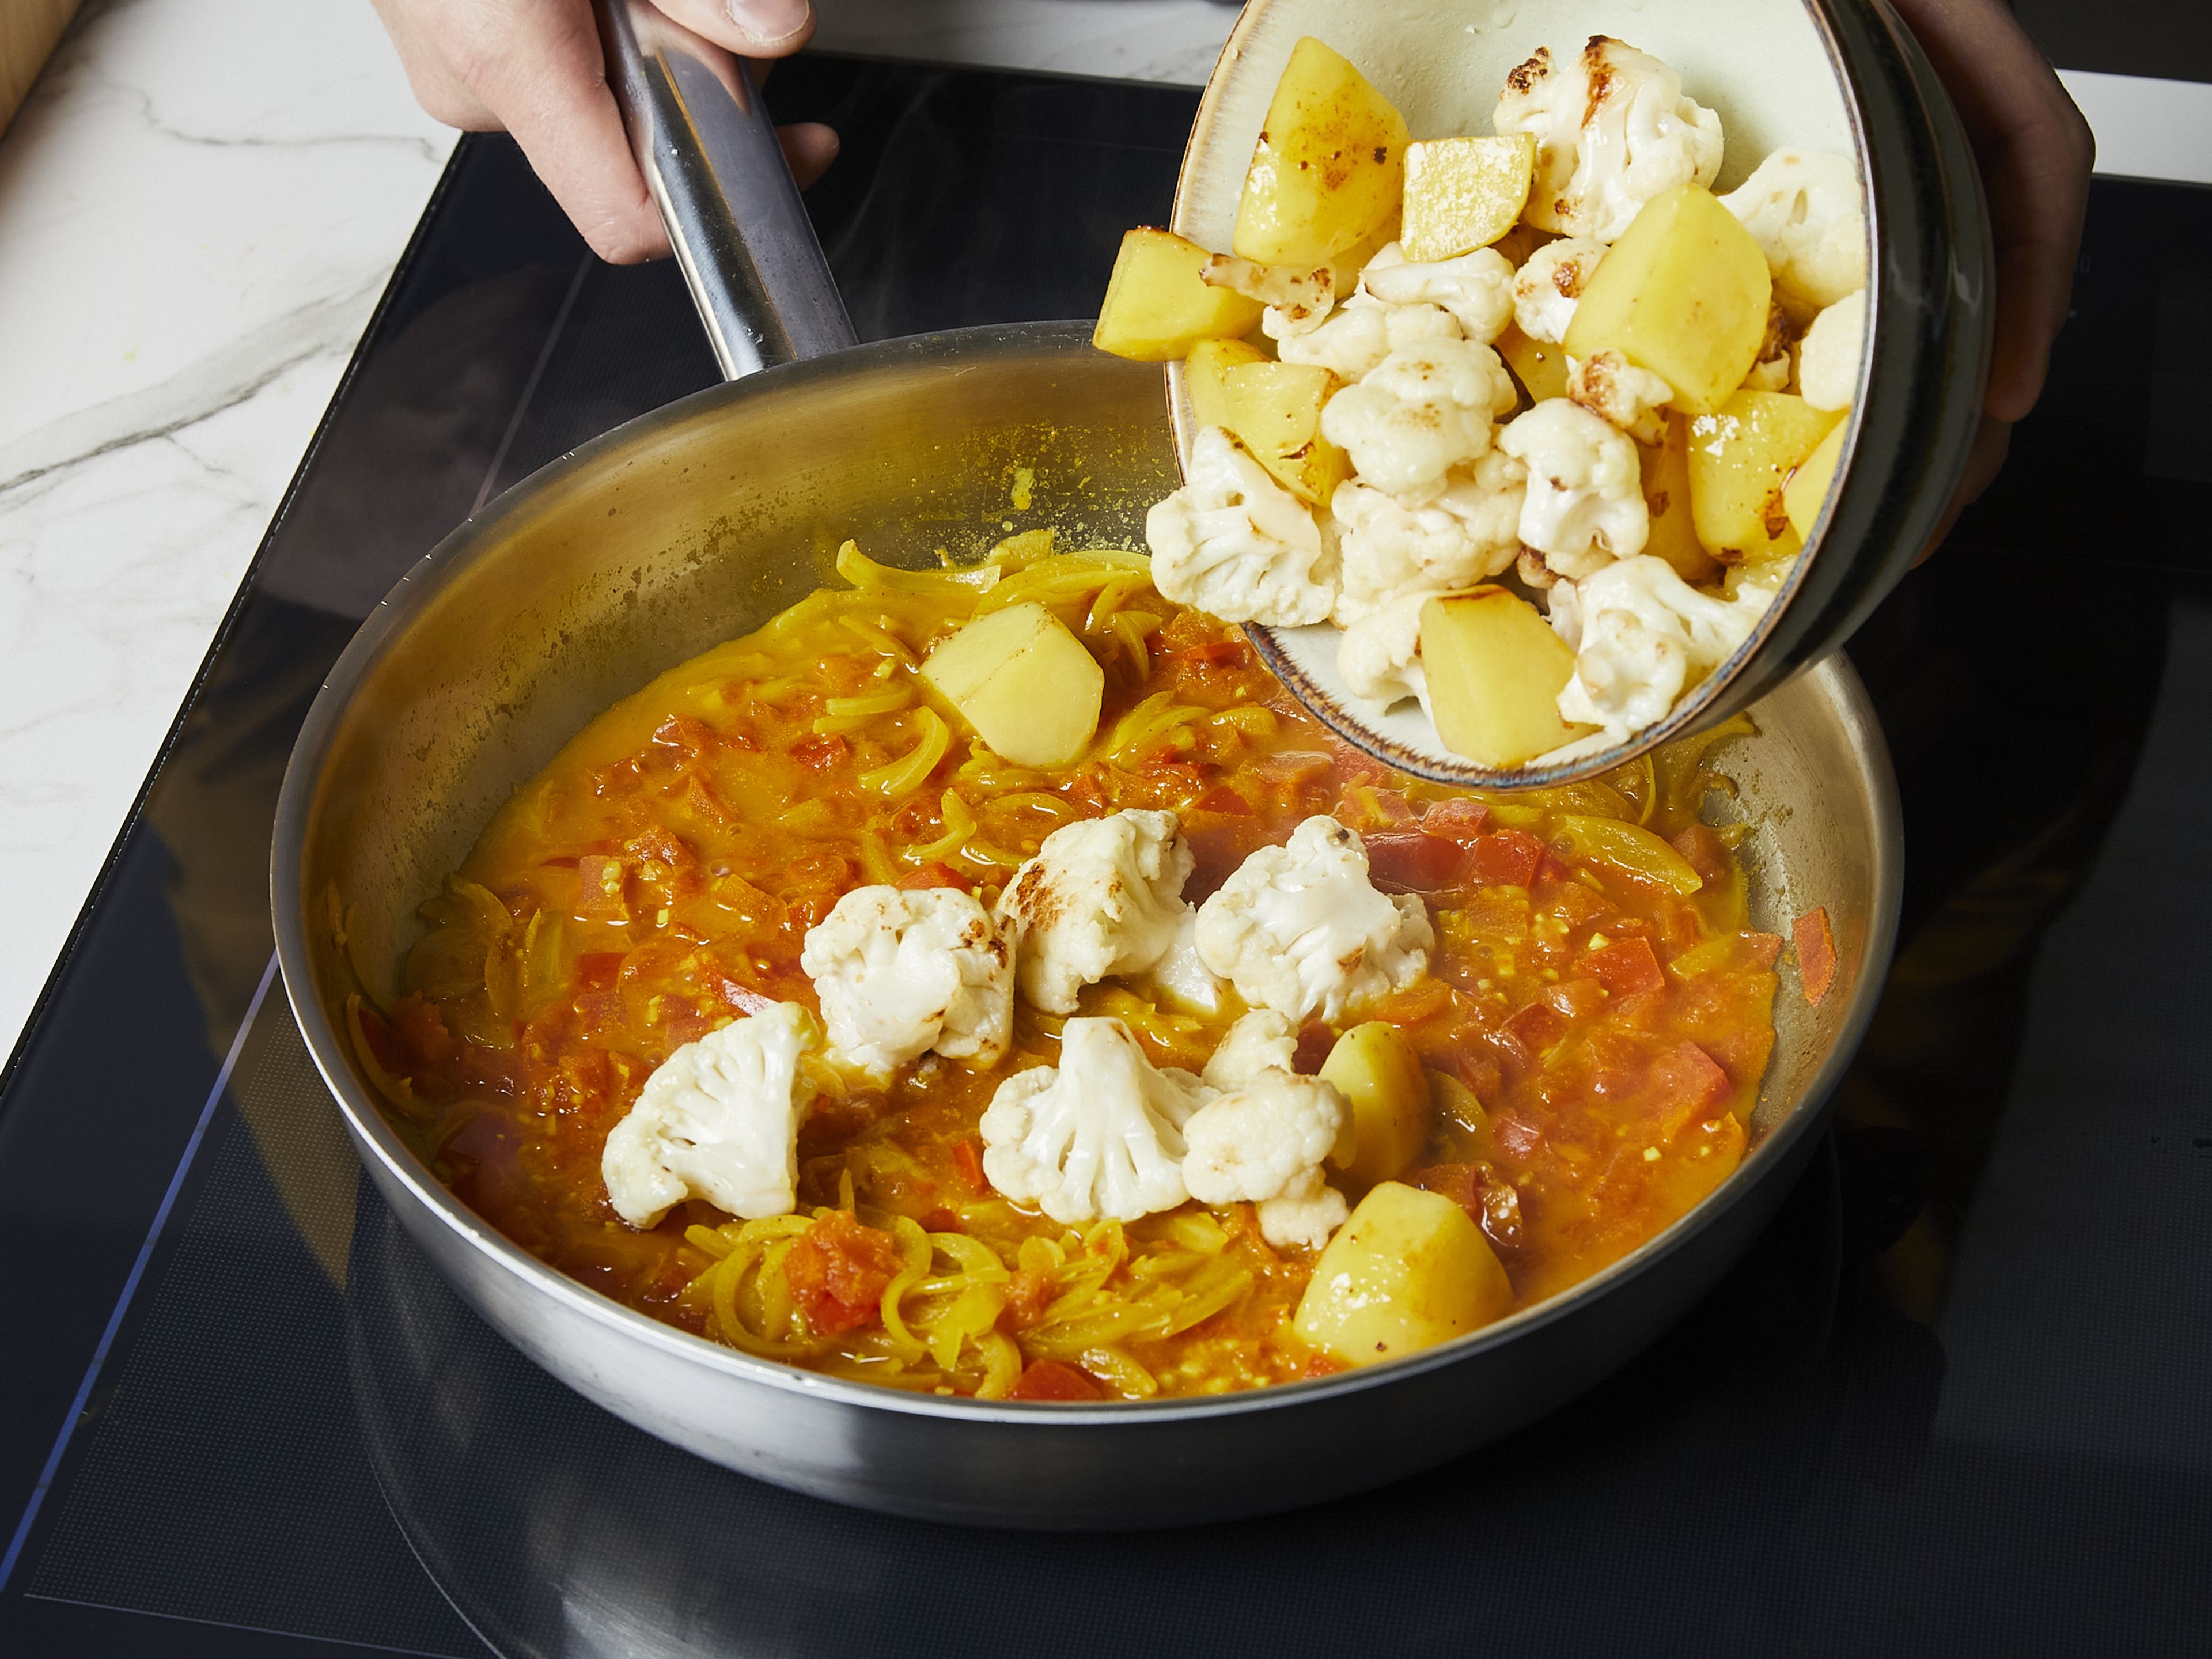 Dann Kartoffeln und Blumenkohl hinzugeben, mischen und mit Salz und Pfeffer würzen. Zugedeckt bei mittlerer Hitze ca. 14–16 Min. kochen, bis die Kartoffeln und der Blumenkohl weich sind. Wenn das Curry zu trocken ist, etwas Wasser hinzufügen. Immer nur so viel zugeben, dass das Gemüse gar werden kann. In der Zwischenzeit den Koriander hacken. Das fertige Curry auf tiefen Tellern anrichten, mit Koriander bestreuen und nach Belieben mit gekochtem Reis oder Naan servieren.